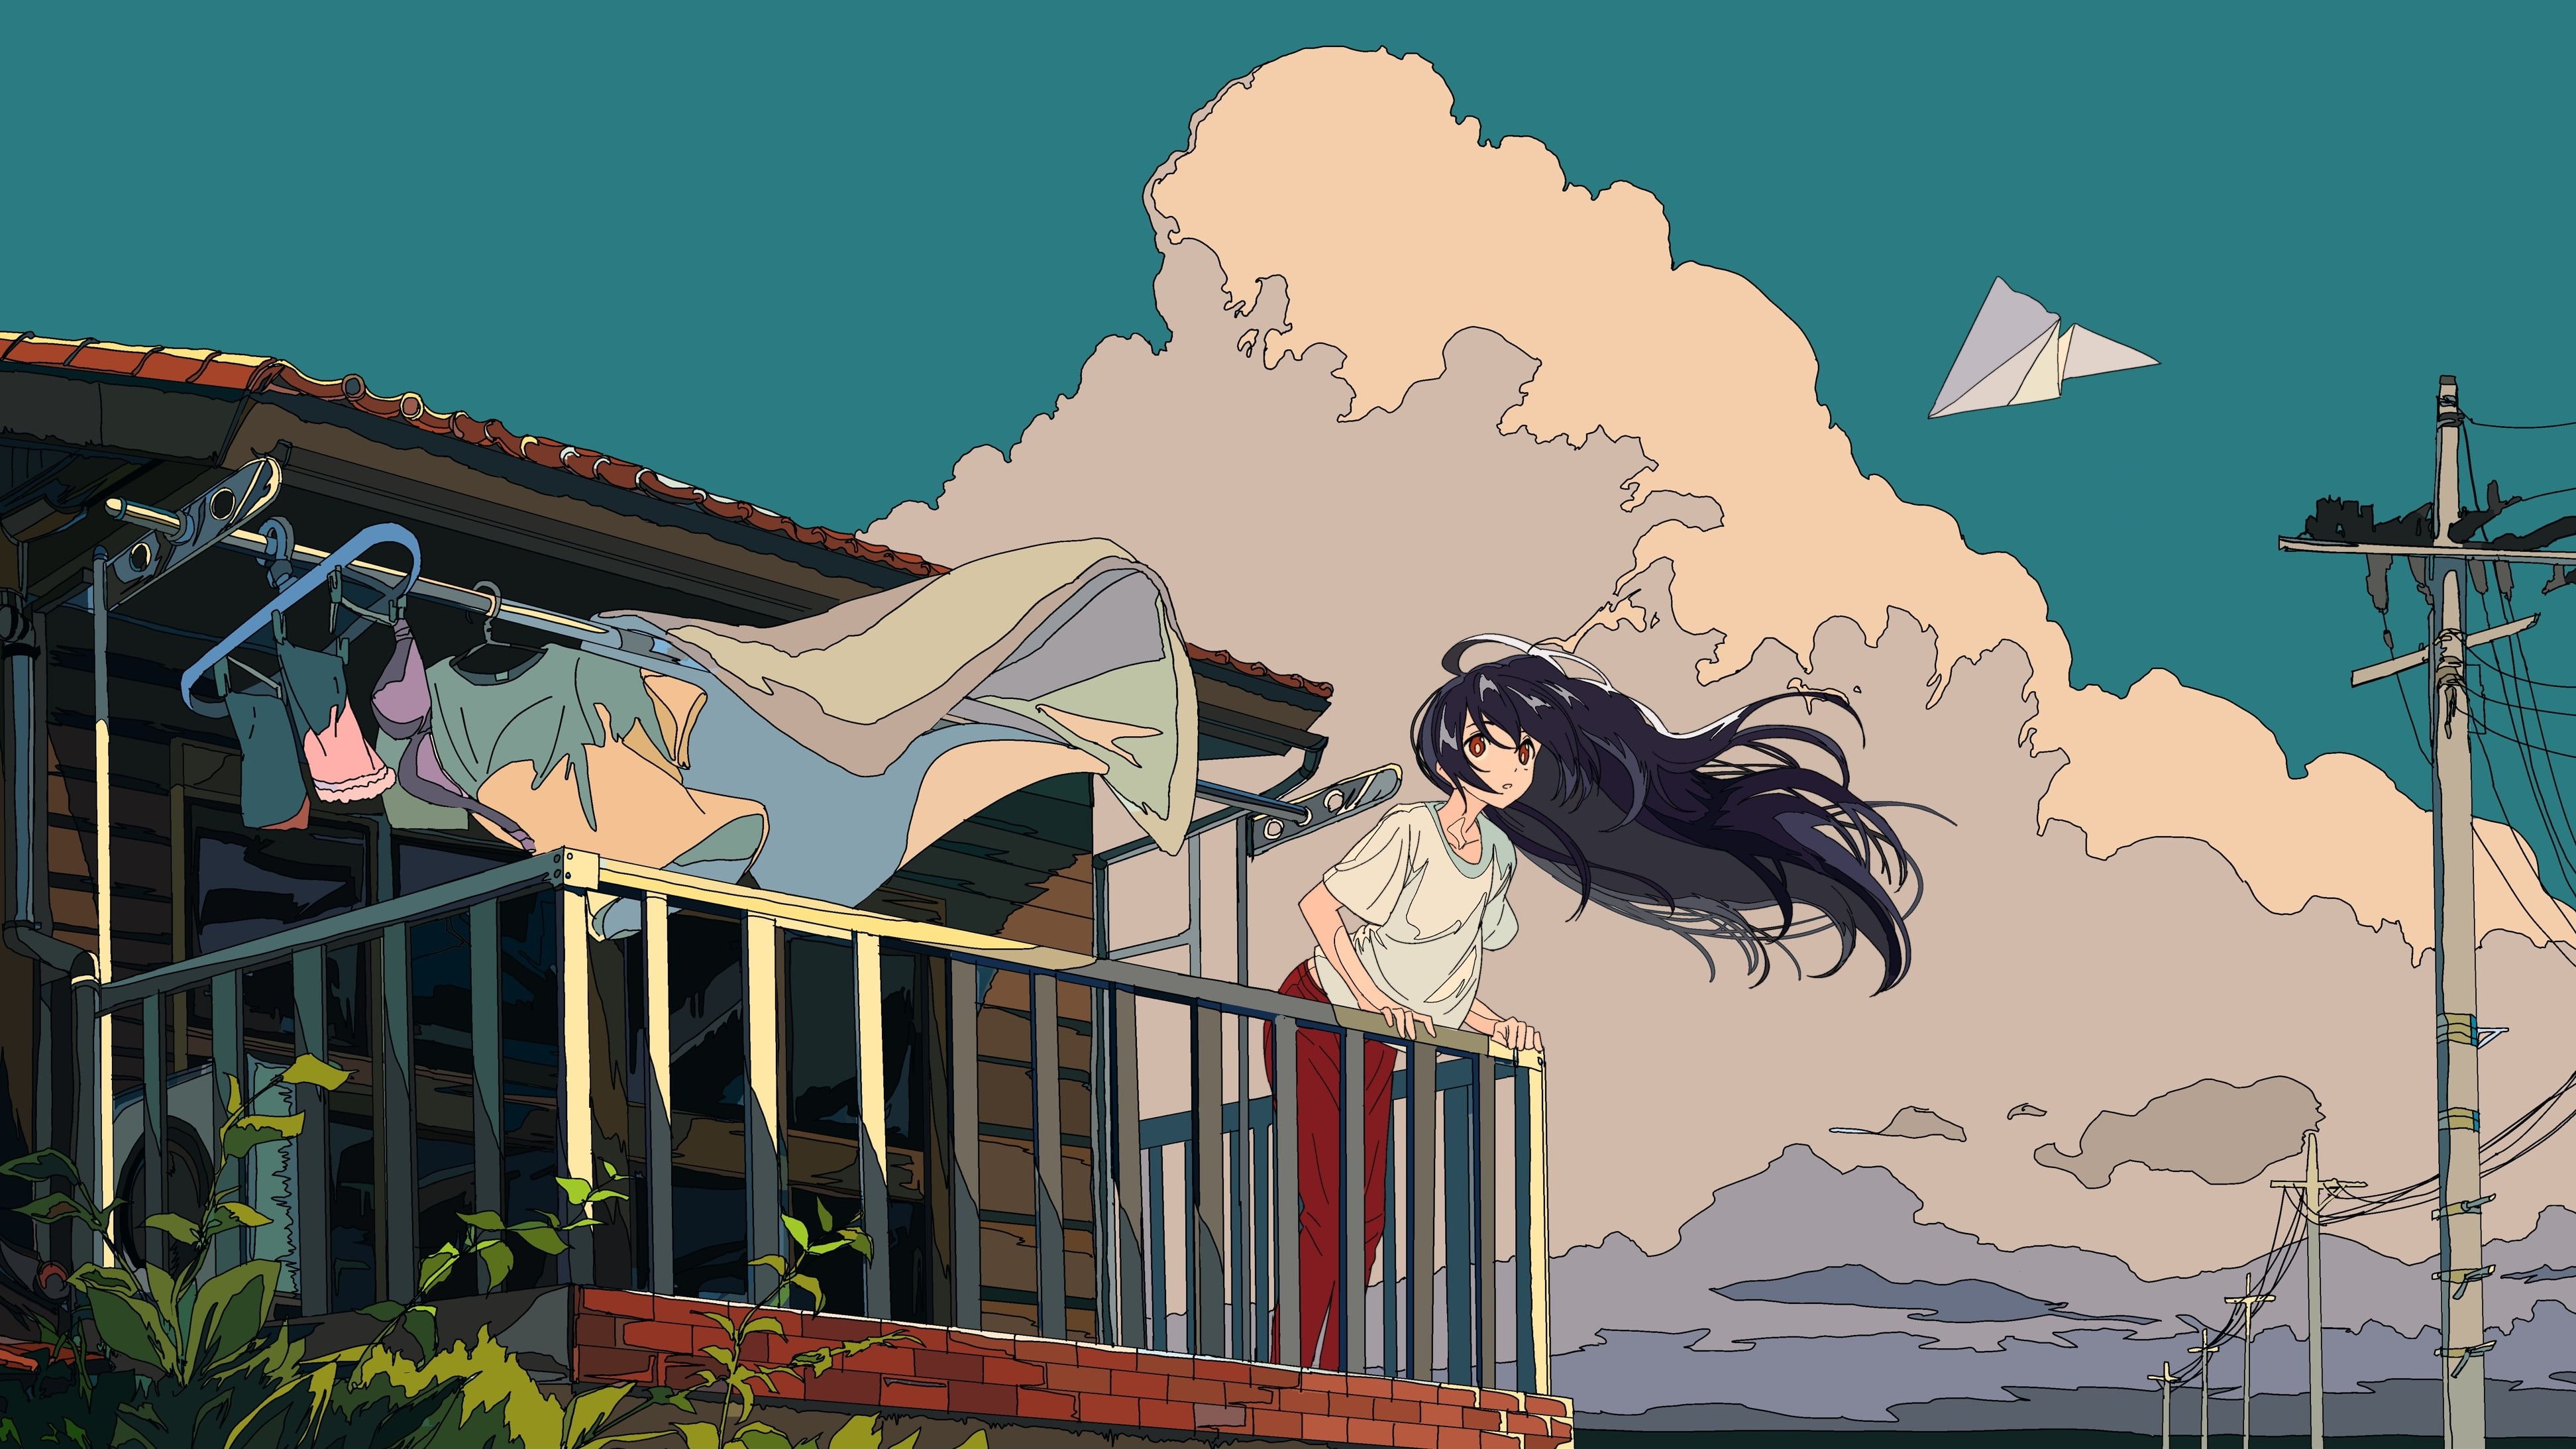 Anime girl with long hair on a balcony - Anime